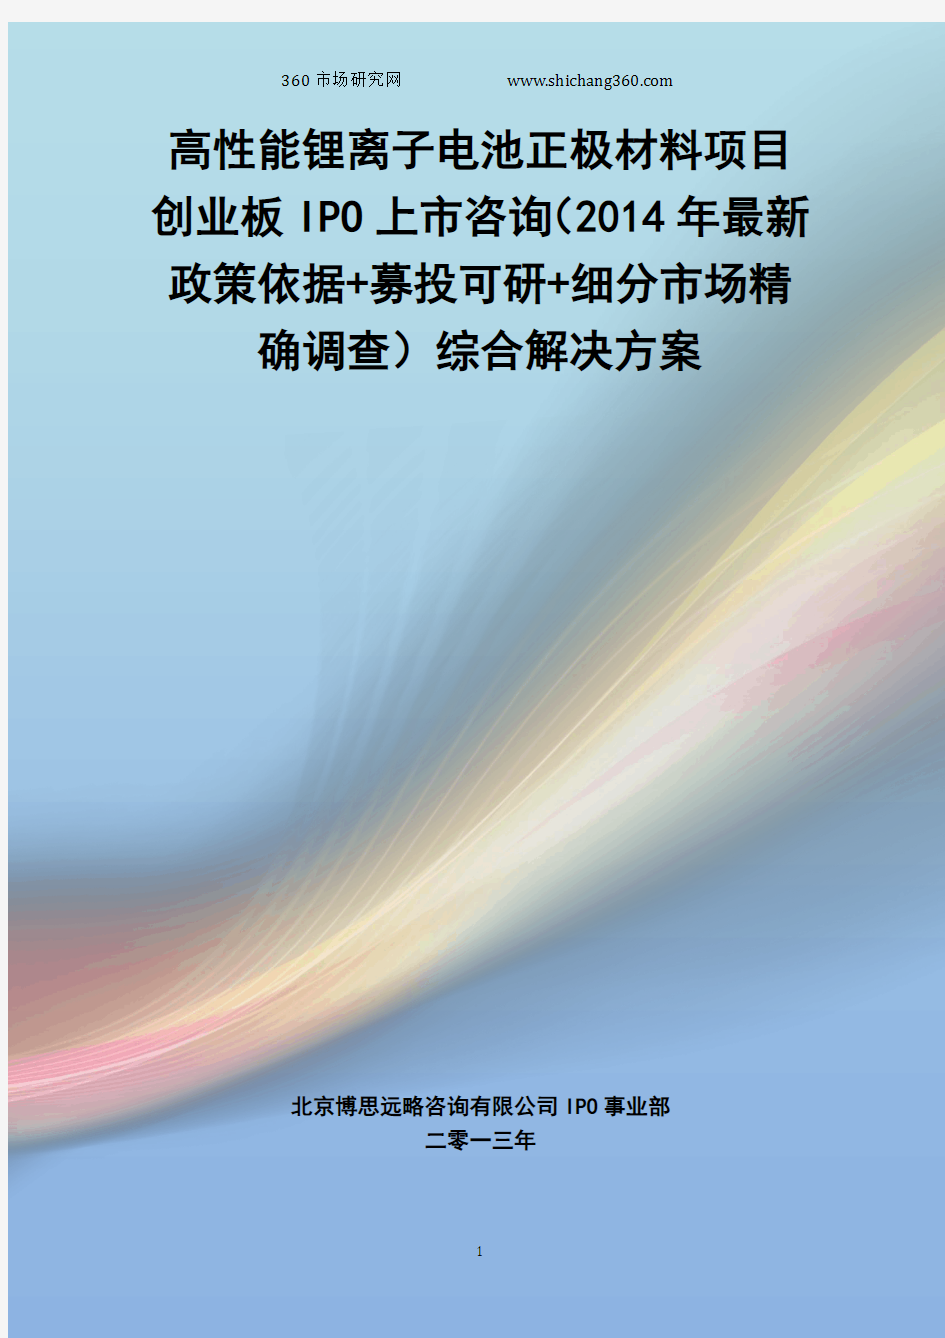 高性能锂离子电池正极材料IPO上市咨询(2014年最新政策+募投可研+细分市场调查)综合解决方案